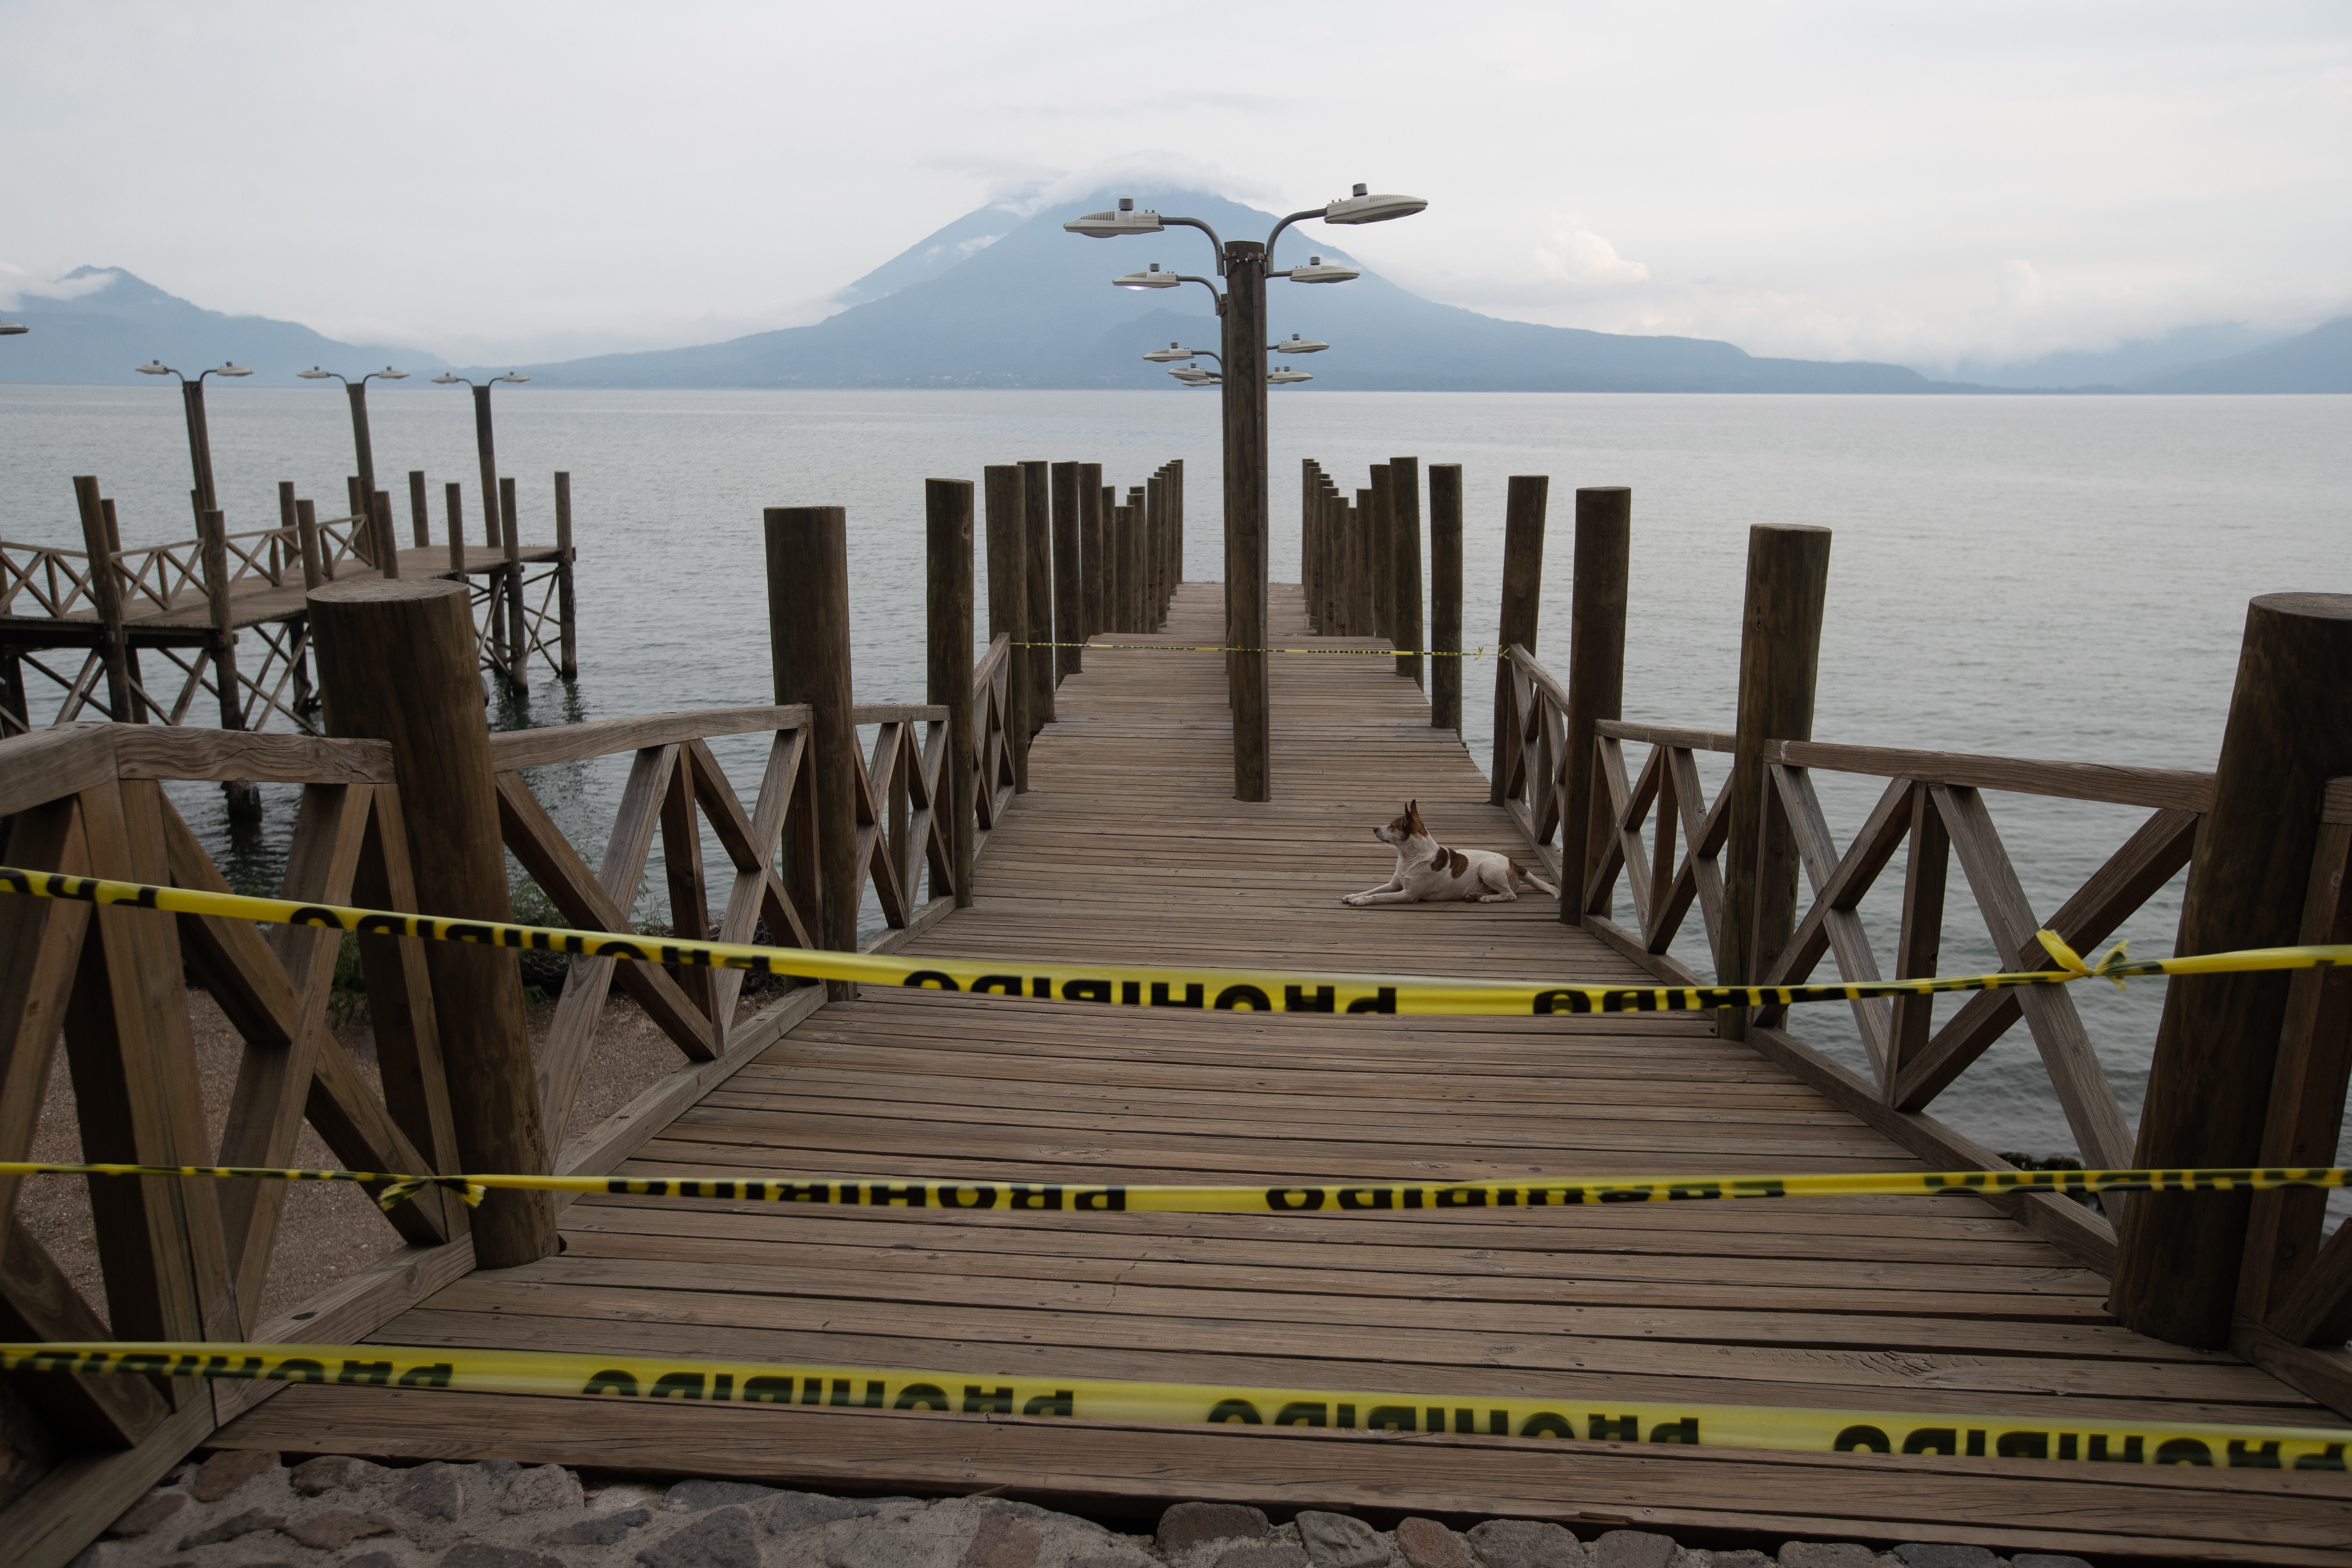 El Inguat proyectó para el 15 de agosto como nueva fecha para la apertura gradual del turismo interno en Guatemala. (Foto Prensa Libre: Hemeroteca)  